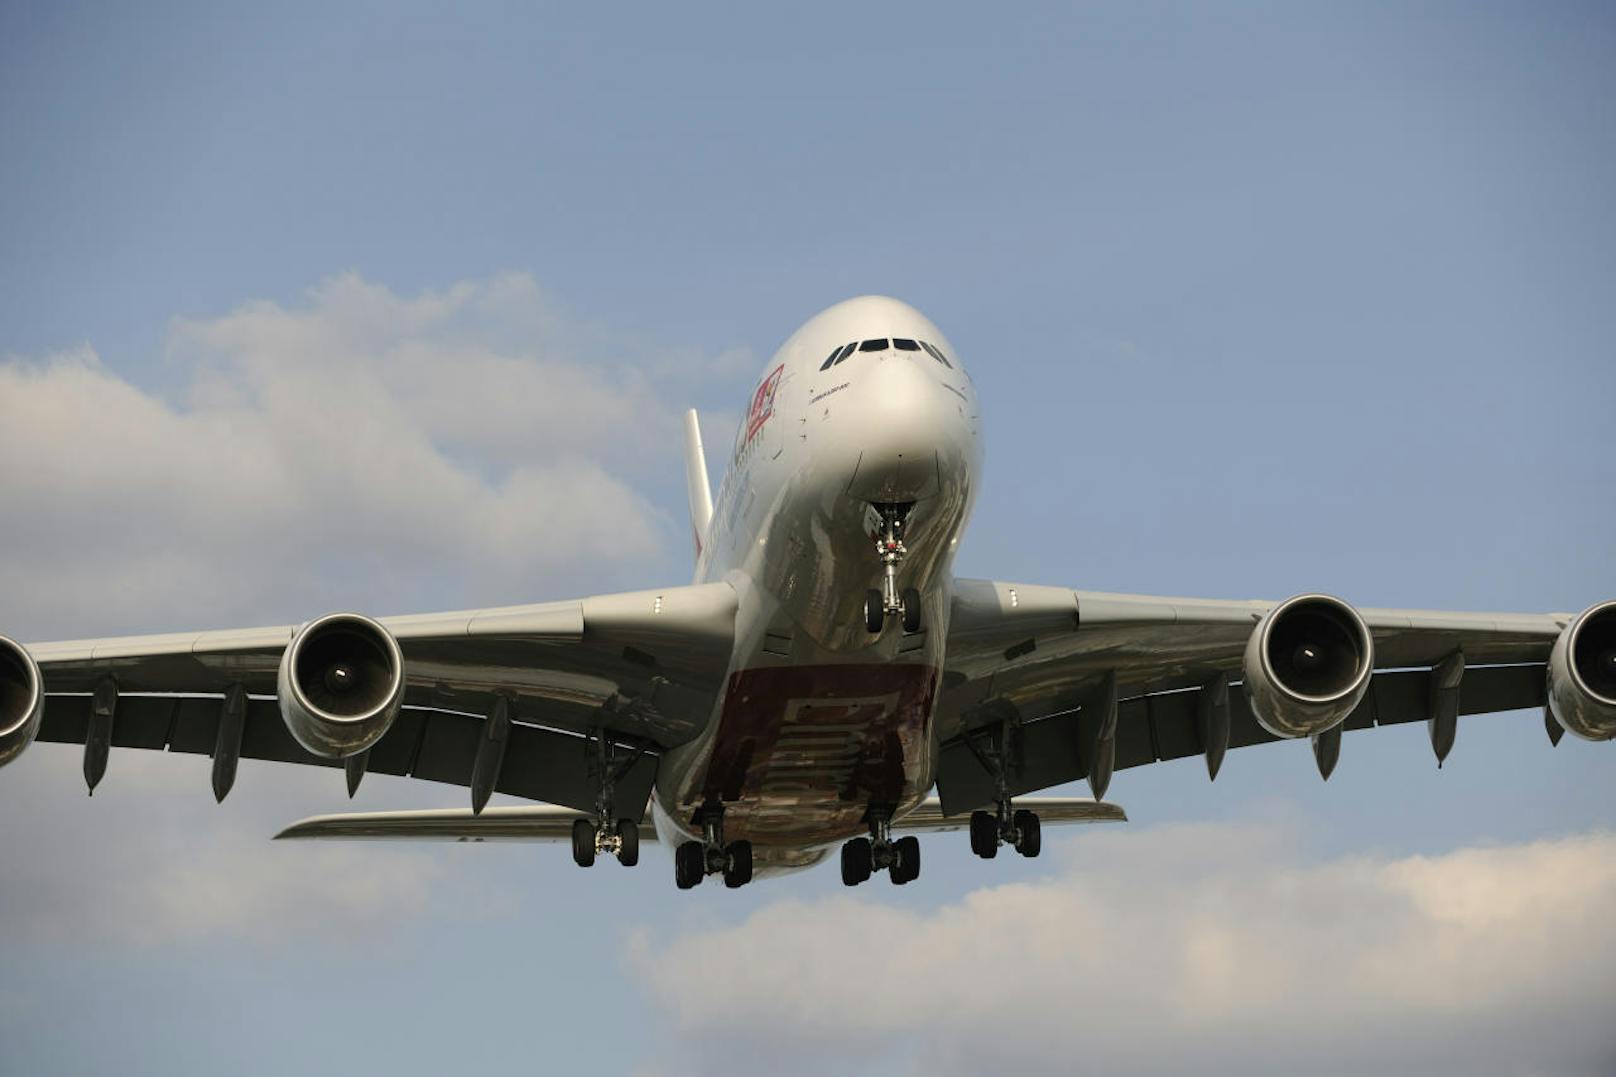 Im Morgengrauen des 25. Oktober 2007 hob der A380 auf dem Changi Airport in Singapur erstmals für einen Linienflug ab. Singapore Airlines setzte das historische Ereignis gebührend in Szene.